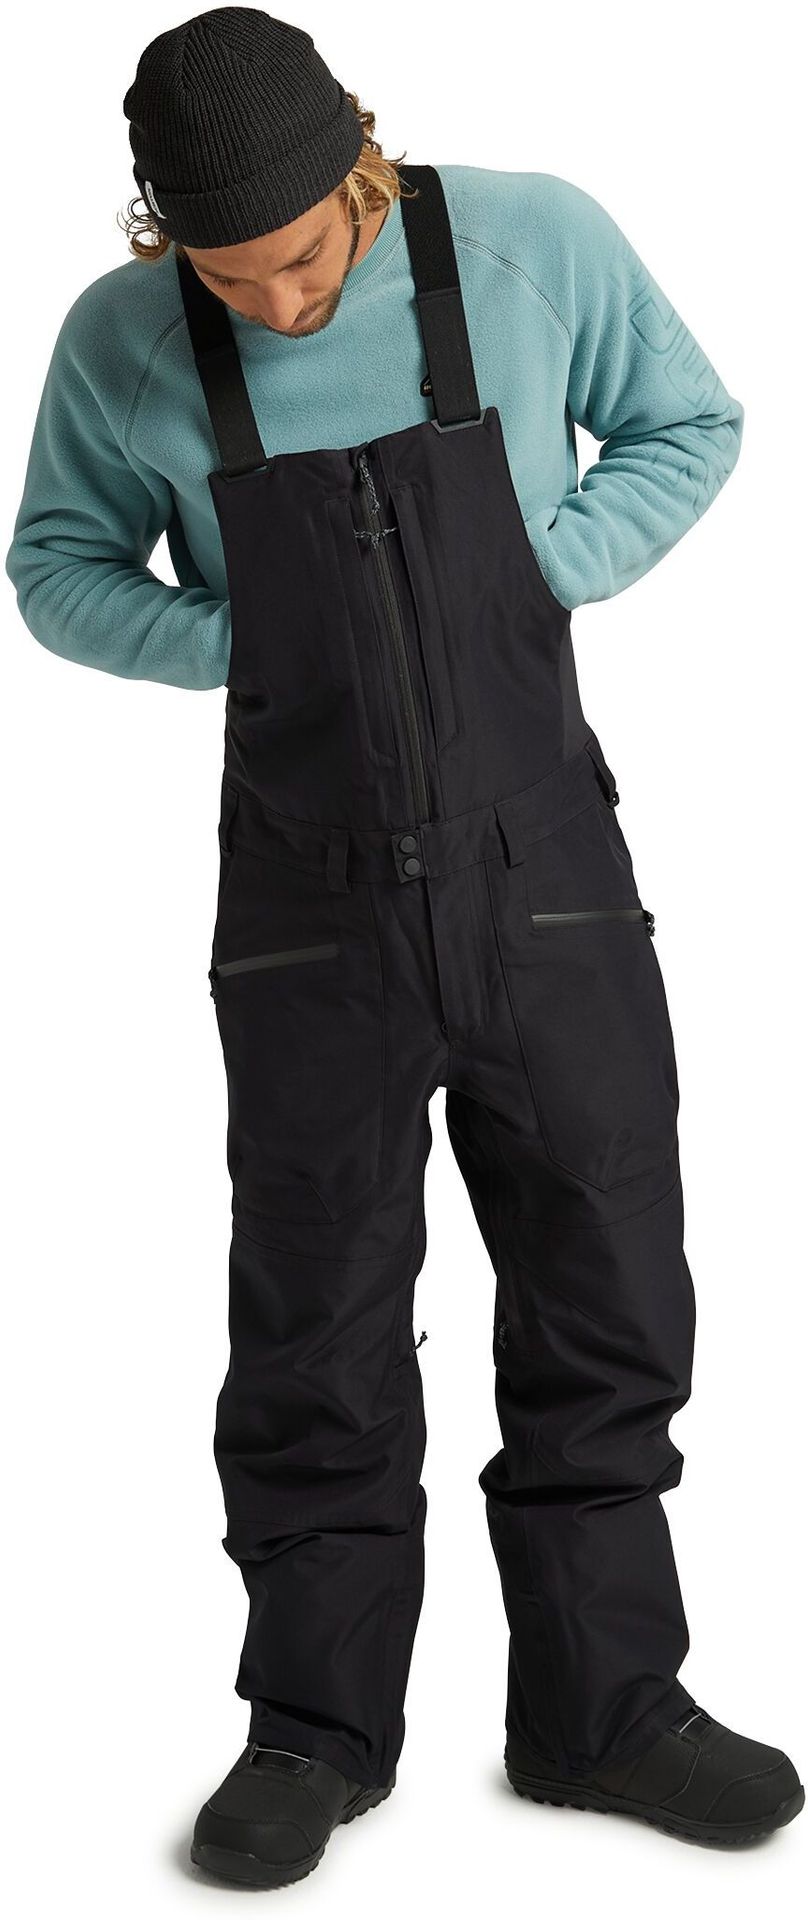 zimowe spodnie męskie BURTON GORE-TEX RESERVE BIB PANT True Black + transport bezpłatny